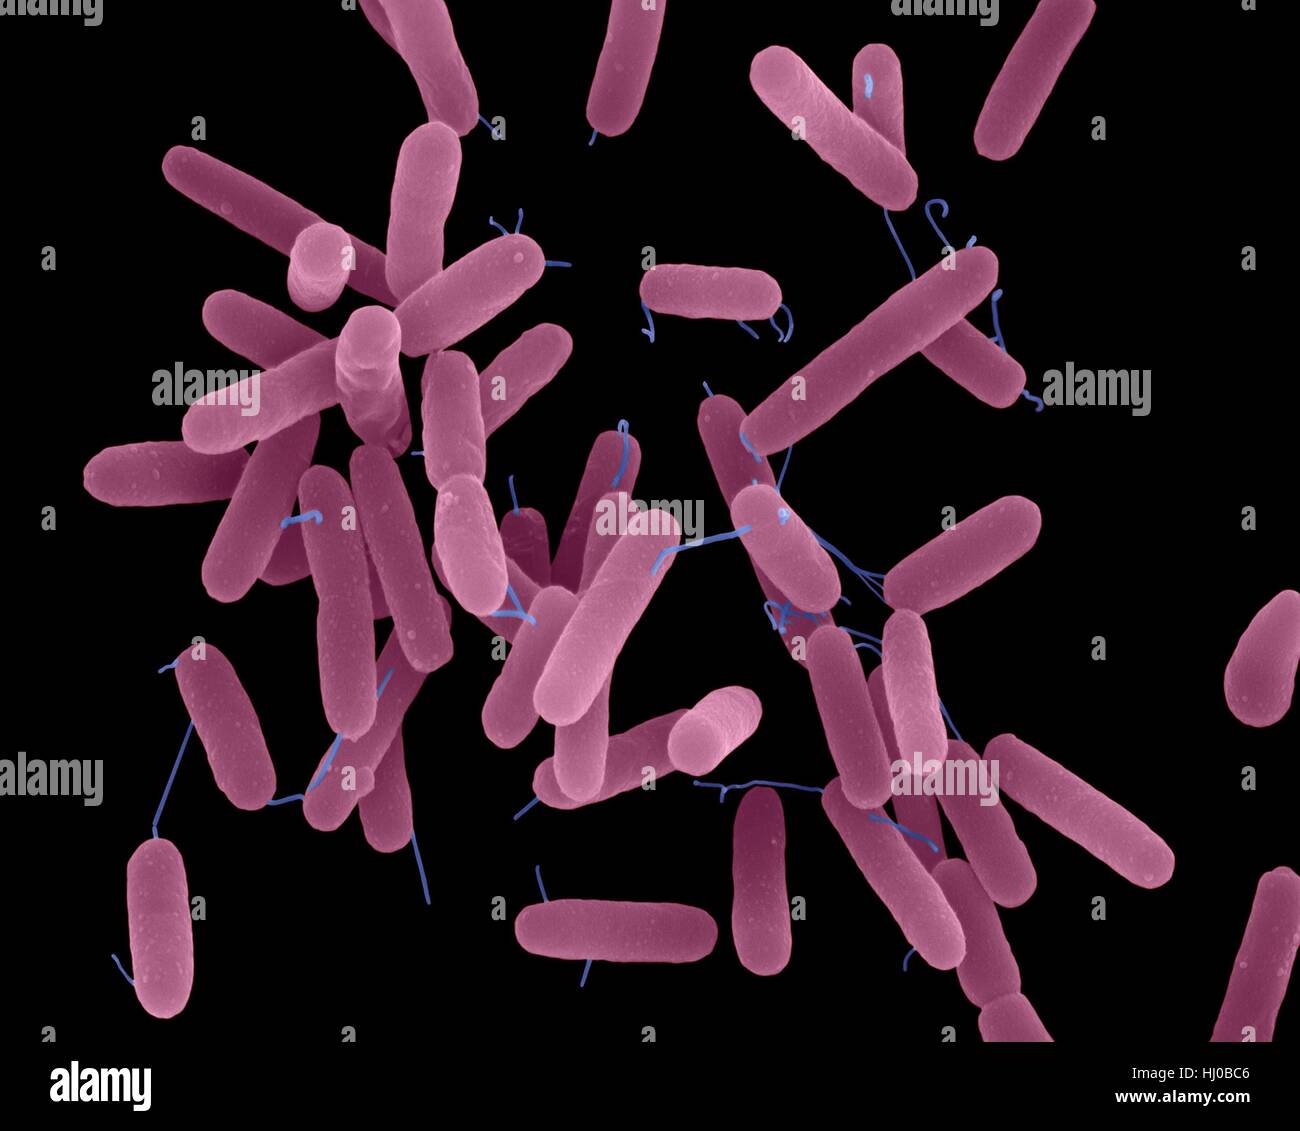 Бактерия синегнойная палочка. Пиоцианин Pseudomonas aeruginosa. • Синегнойная палочка (p. aeruginosa). Бактерии Pseudomonas. Псевдомонас аэругиноза микроскопия.